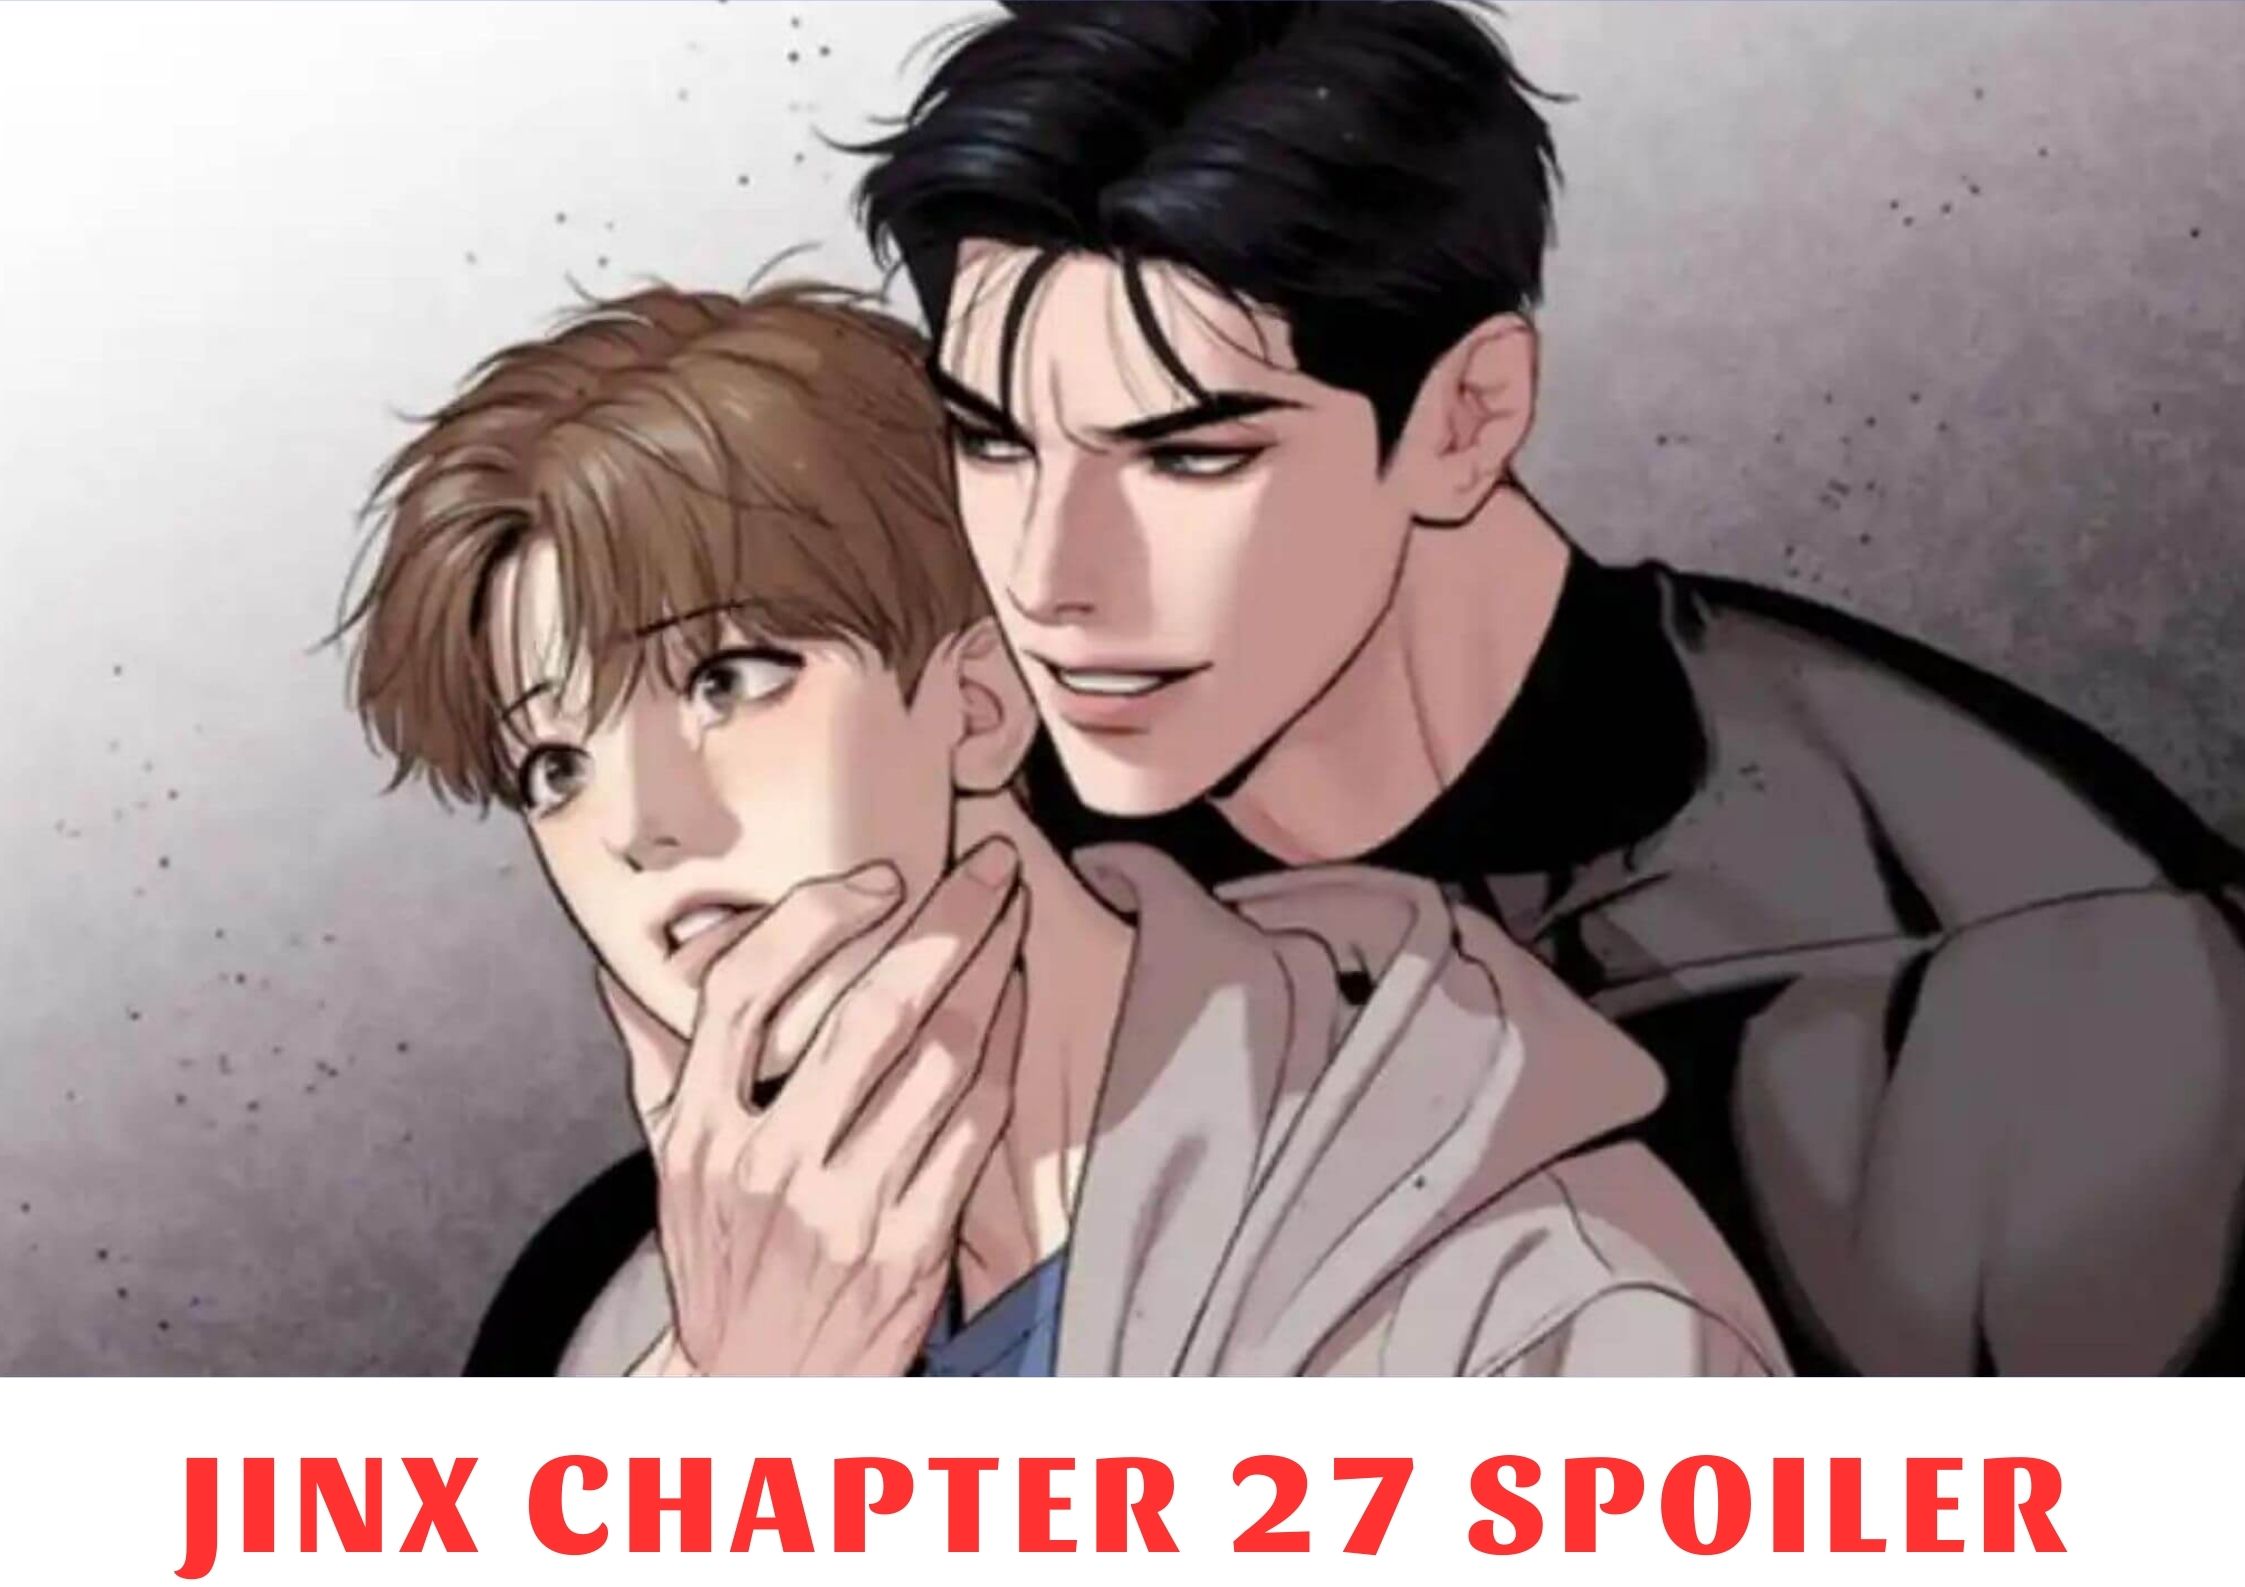 Jinx Chapter 27 Spoiler